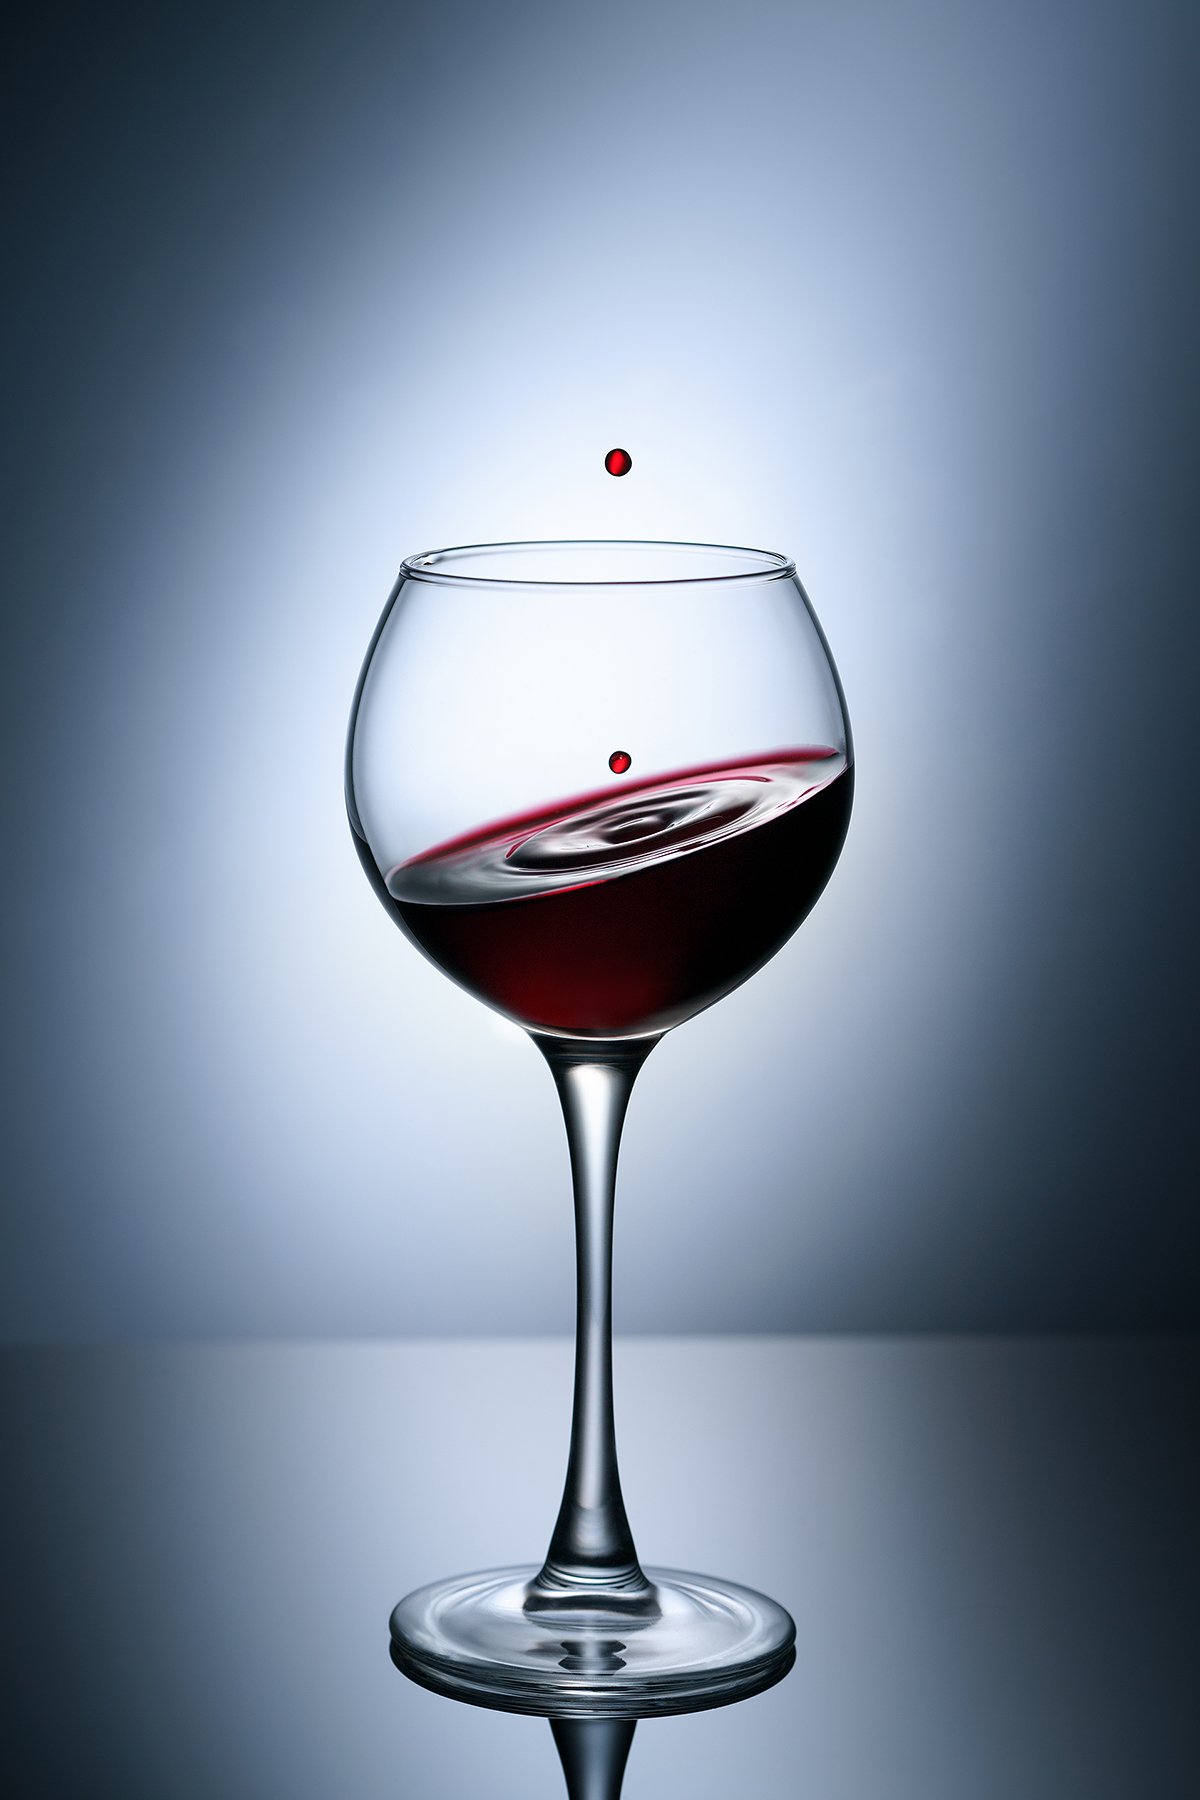 бокал, вино, красное вино, стекло, прозрачность, капли, минимализм, предметка, ЯR Ольга